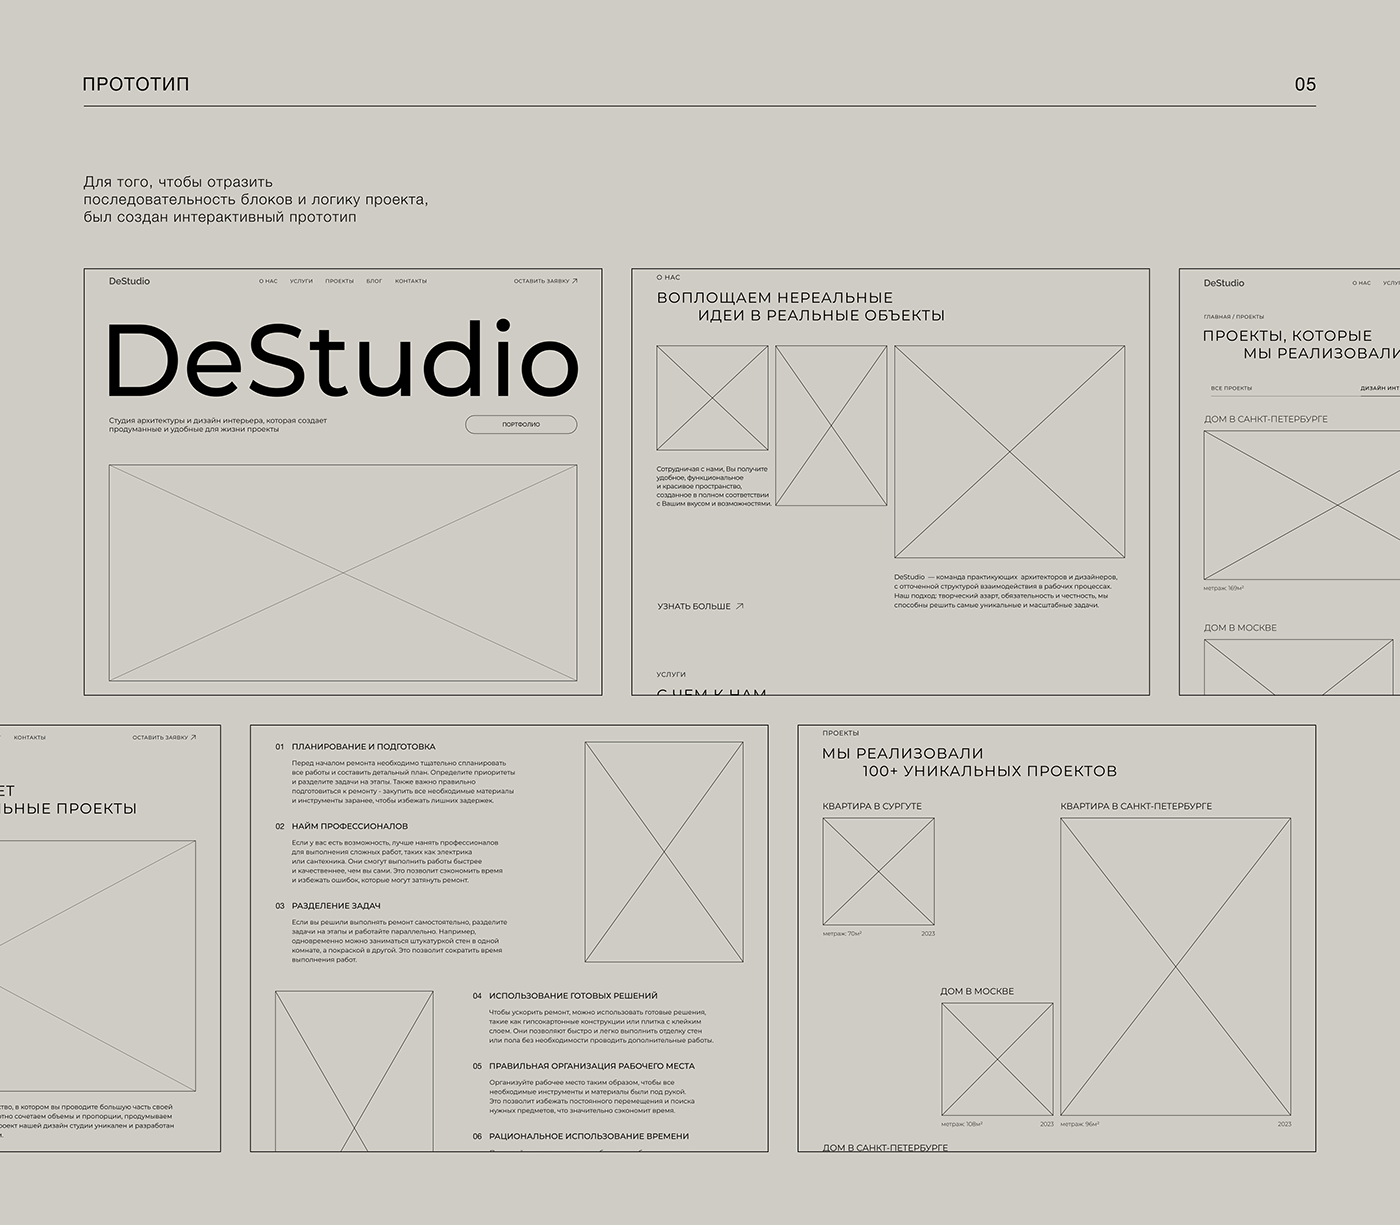 Website DeStudio | Interior design studio — Изображение №7 — Интерфейсы на Dprofile